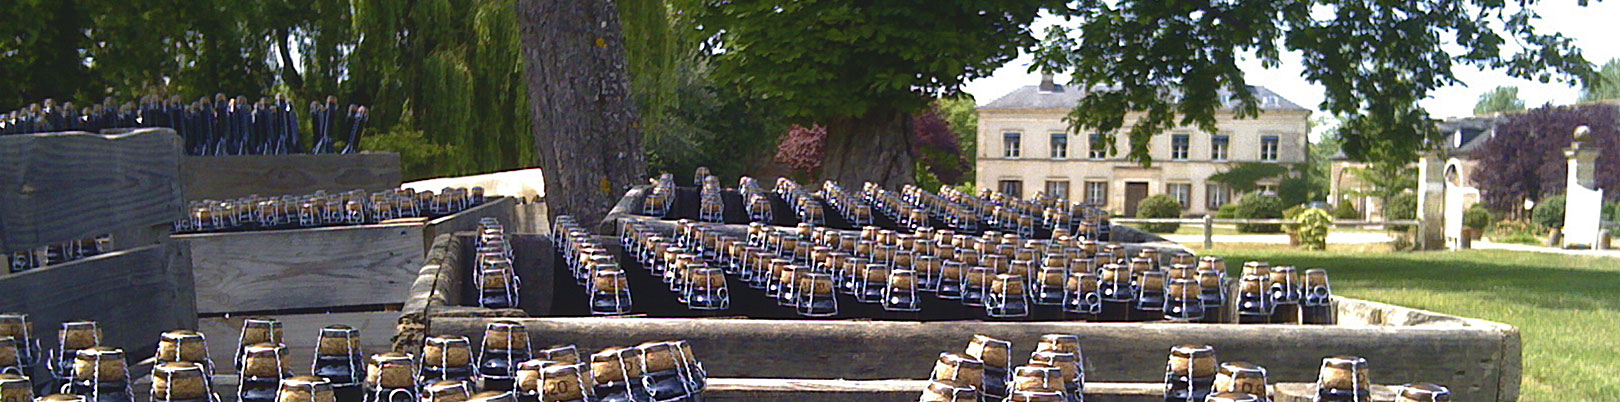 Domaine Dupont Cider bottles